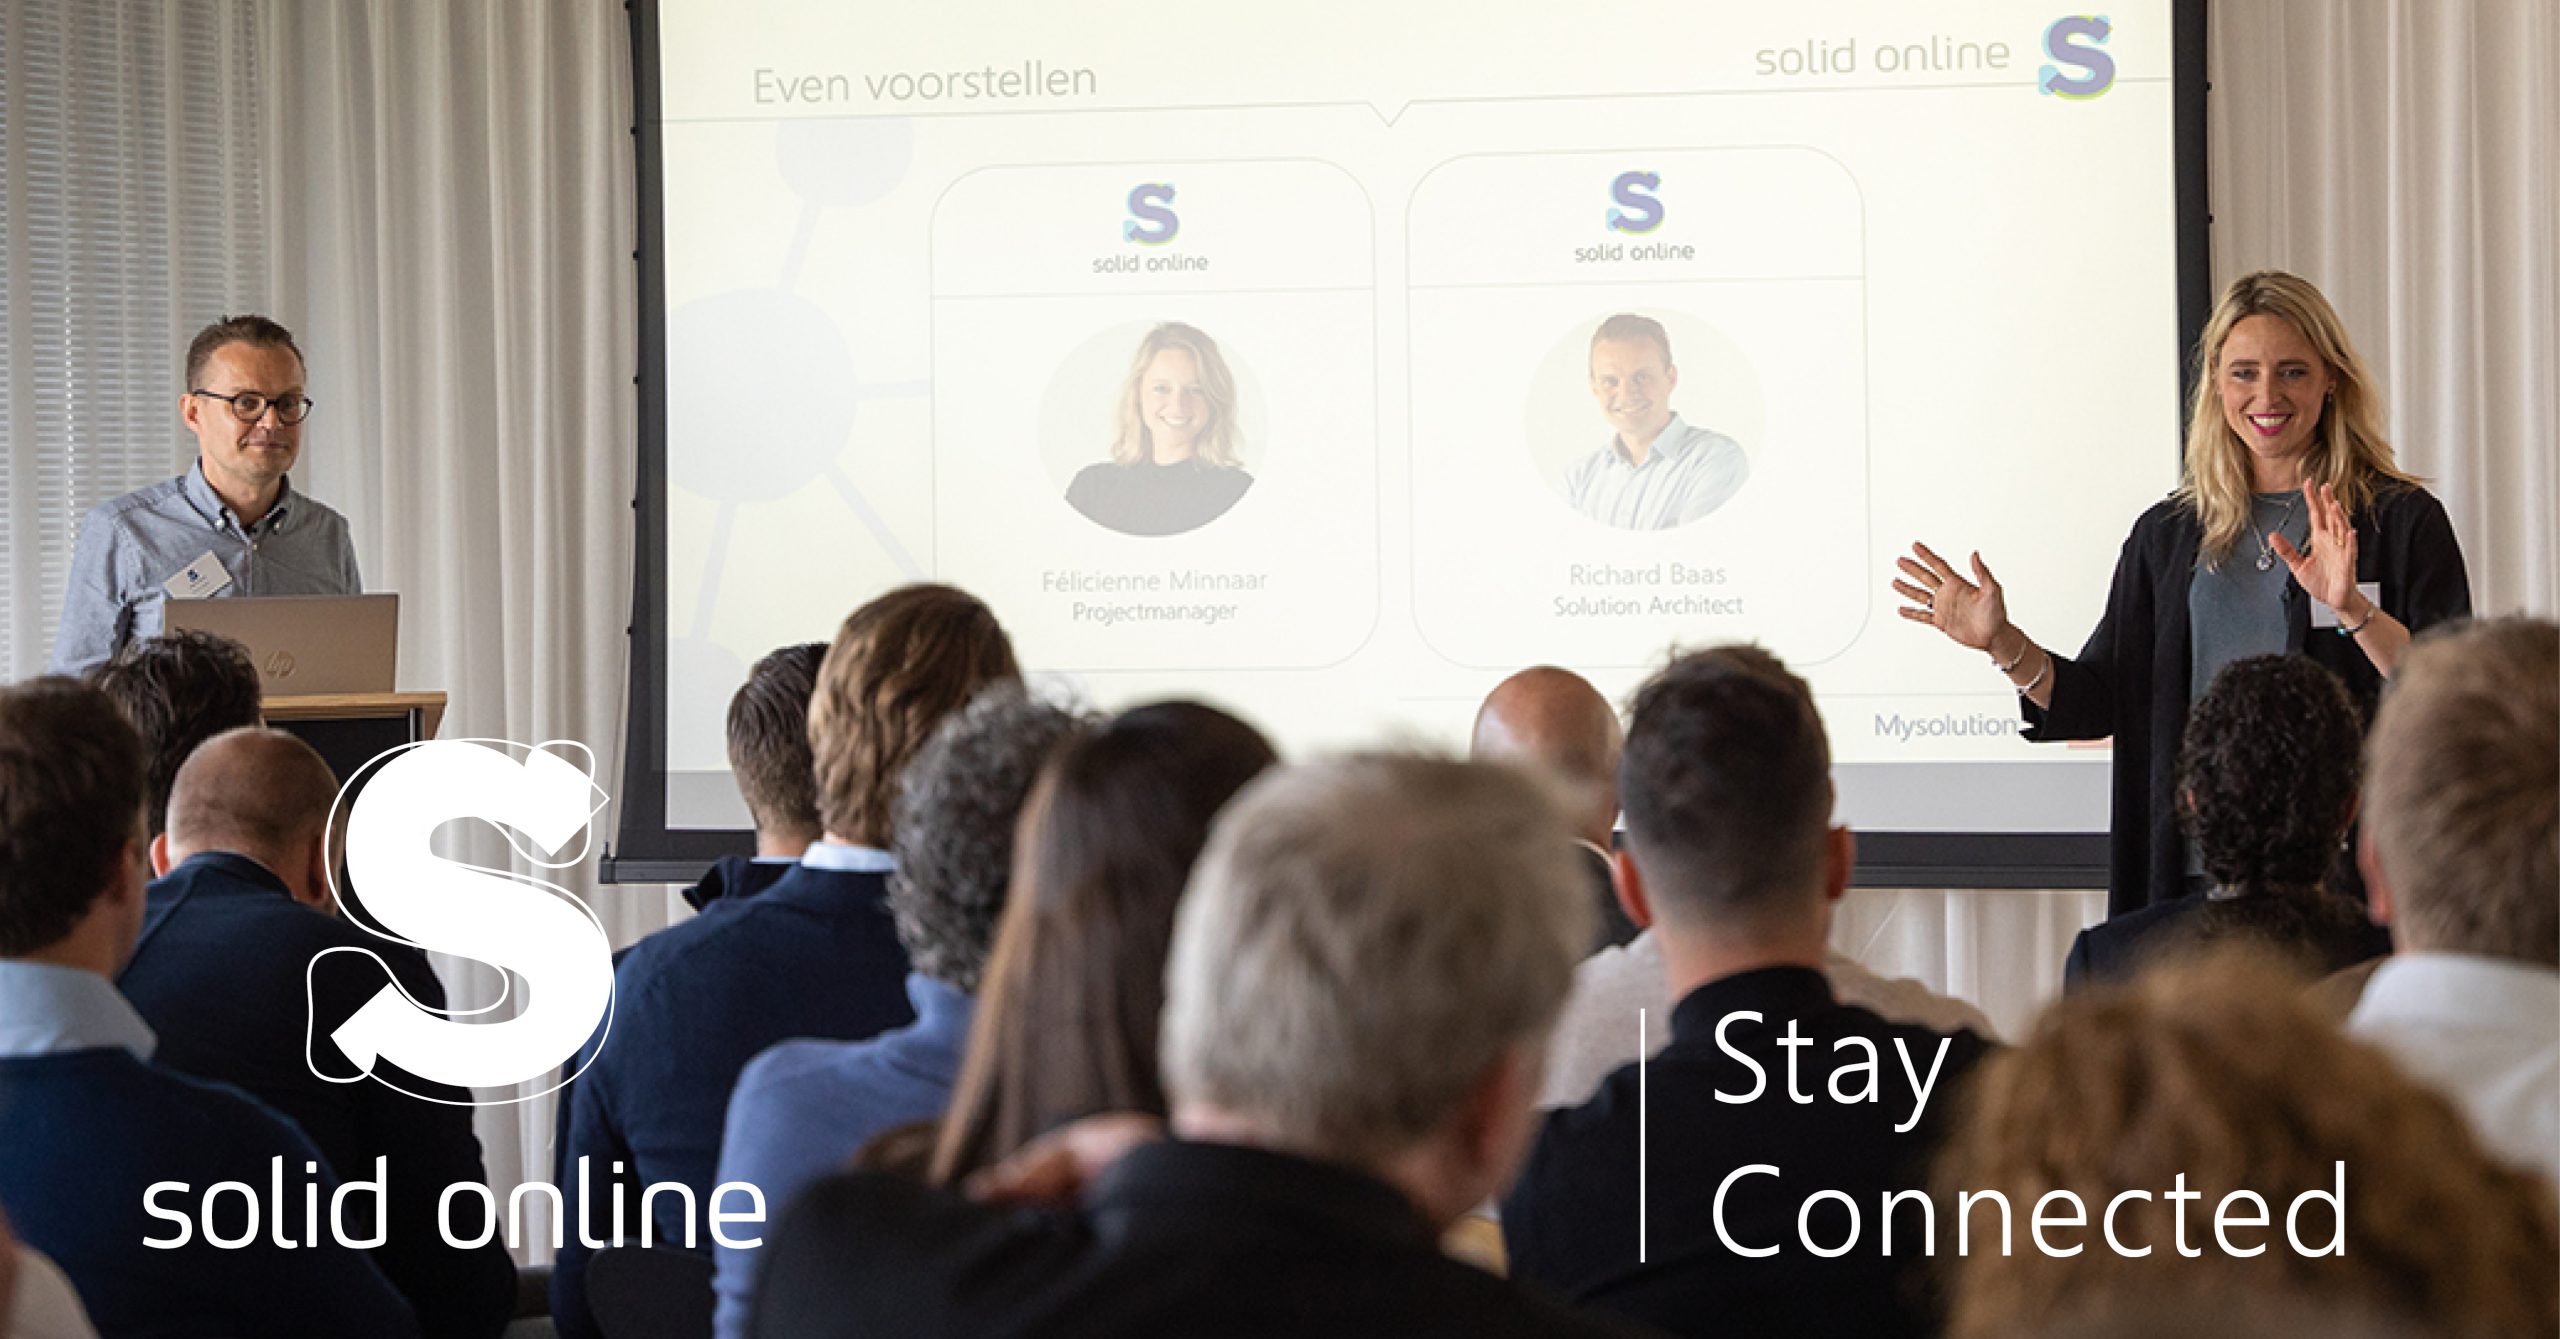 Stay Connected: succesvol Solid Online Event viert samenwerkingen